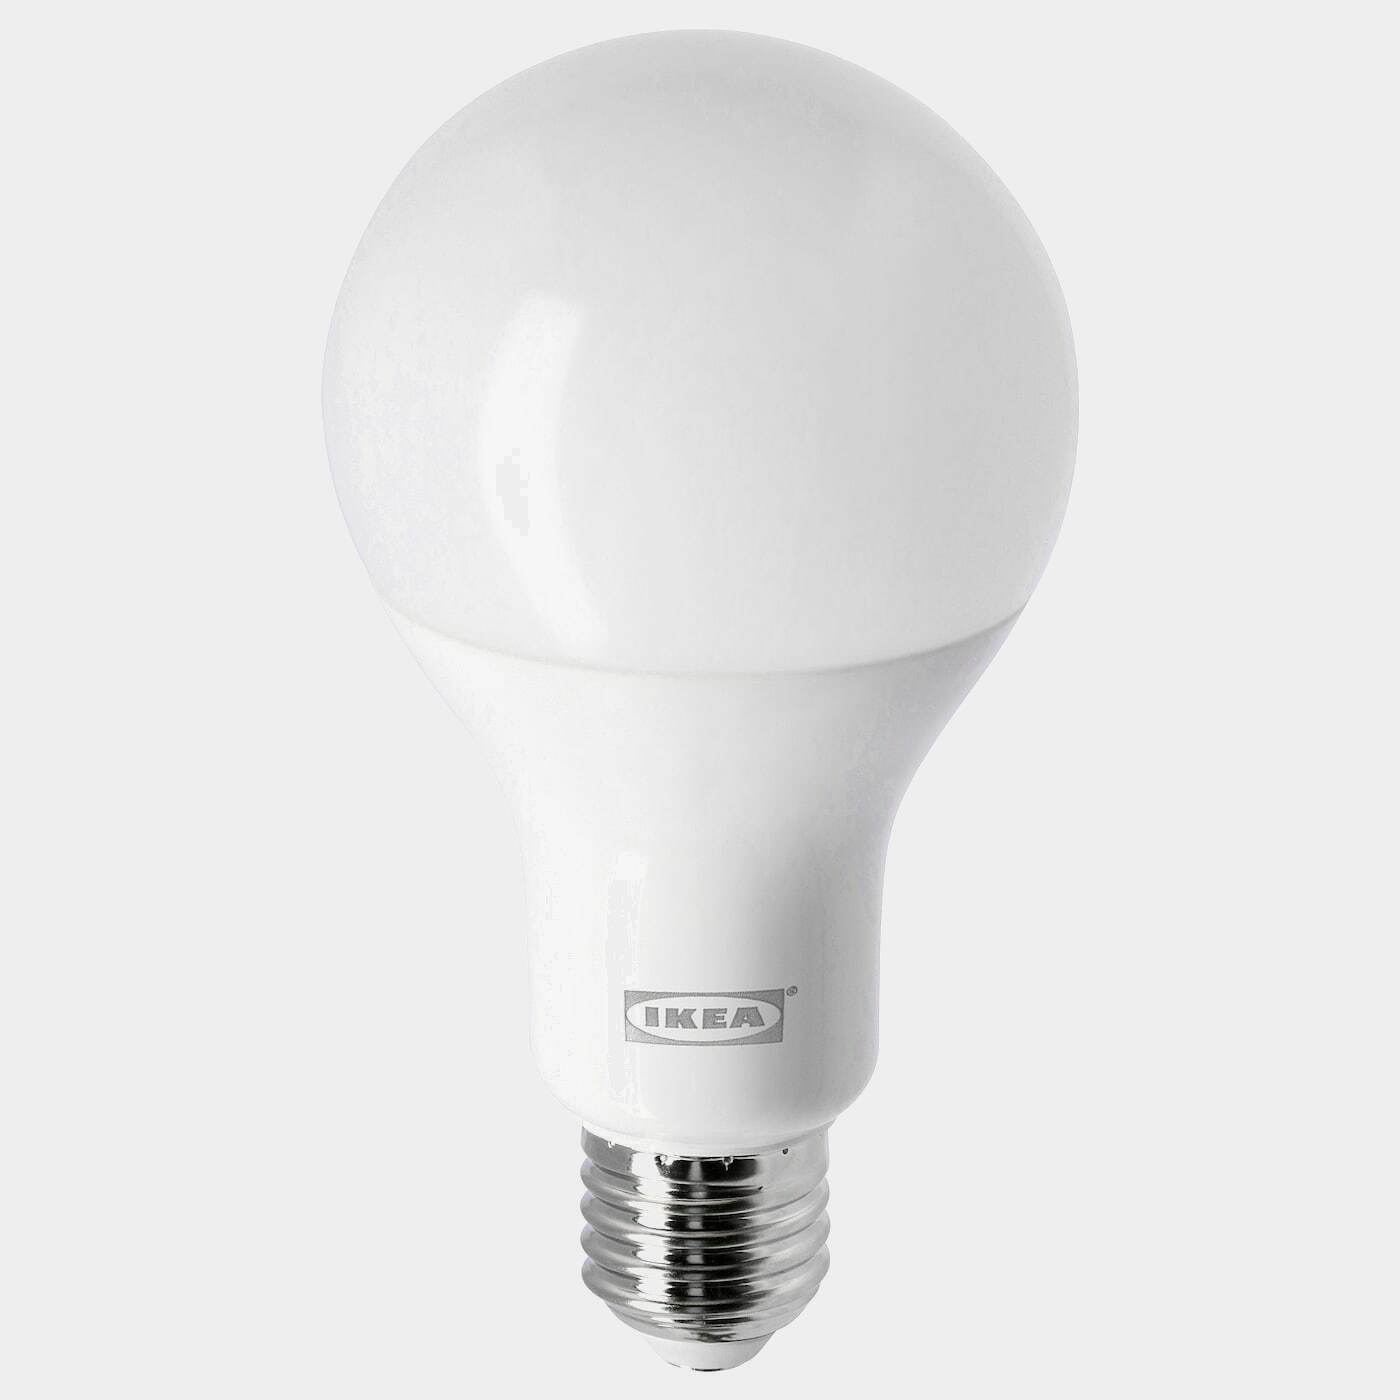 LEDARE LED-Leuchtmittel E27 1055 lm  -  - Beleuchtung Ideen für dein Zuhause von Home Trends. Beleuchtung Trends von Social Media Influencer für dein Skandi Zuhause.